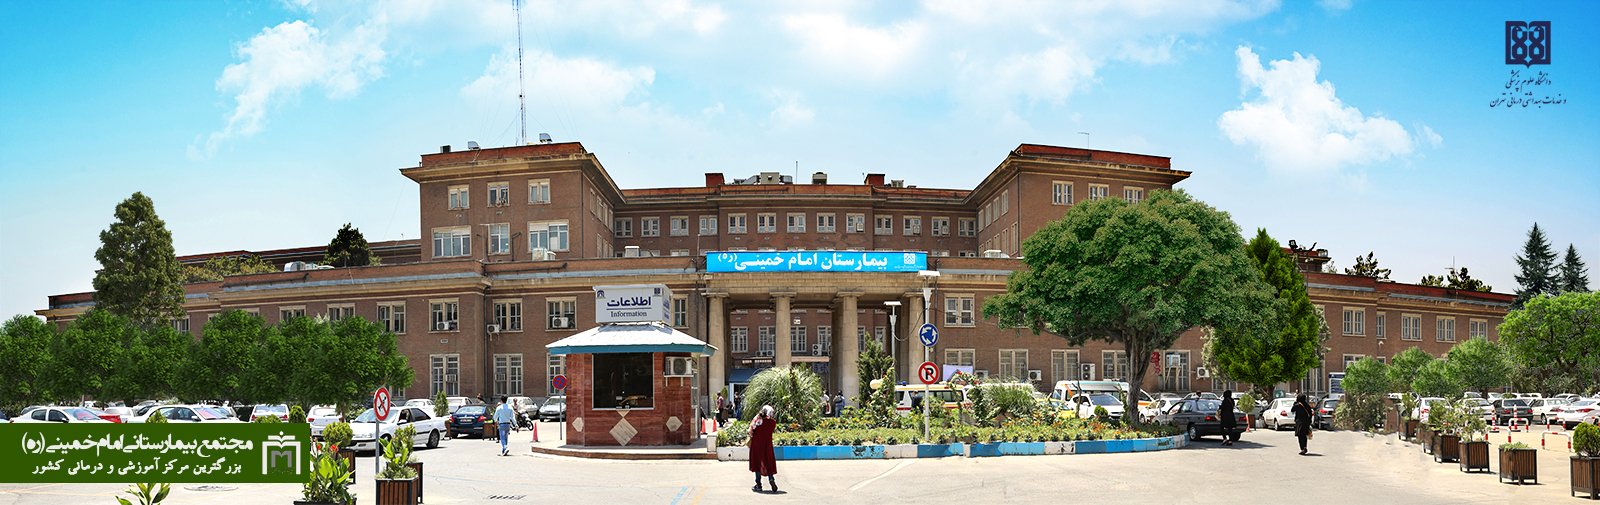 آدرس اداره طرح دانشگاه علوم پزشکی تهران
